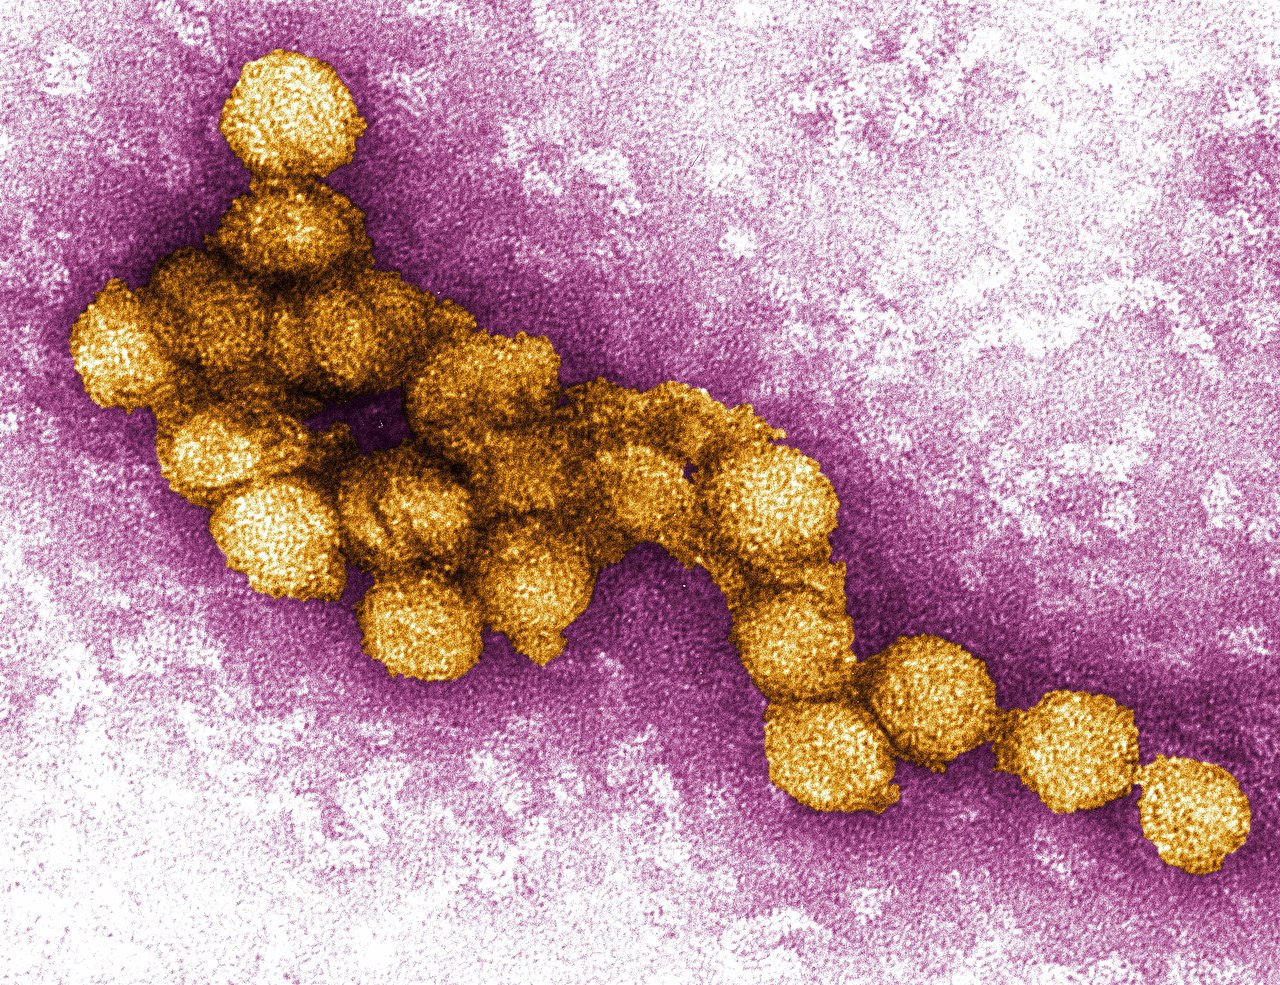 Virus du Nil occidental: symptômes et traitement